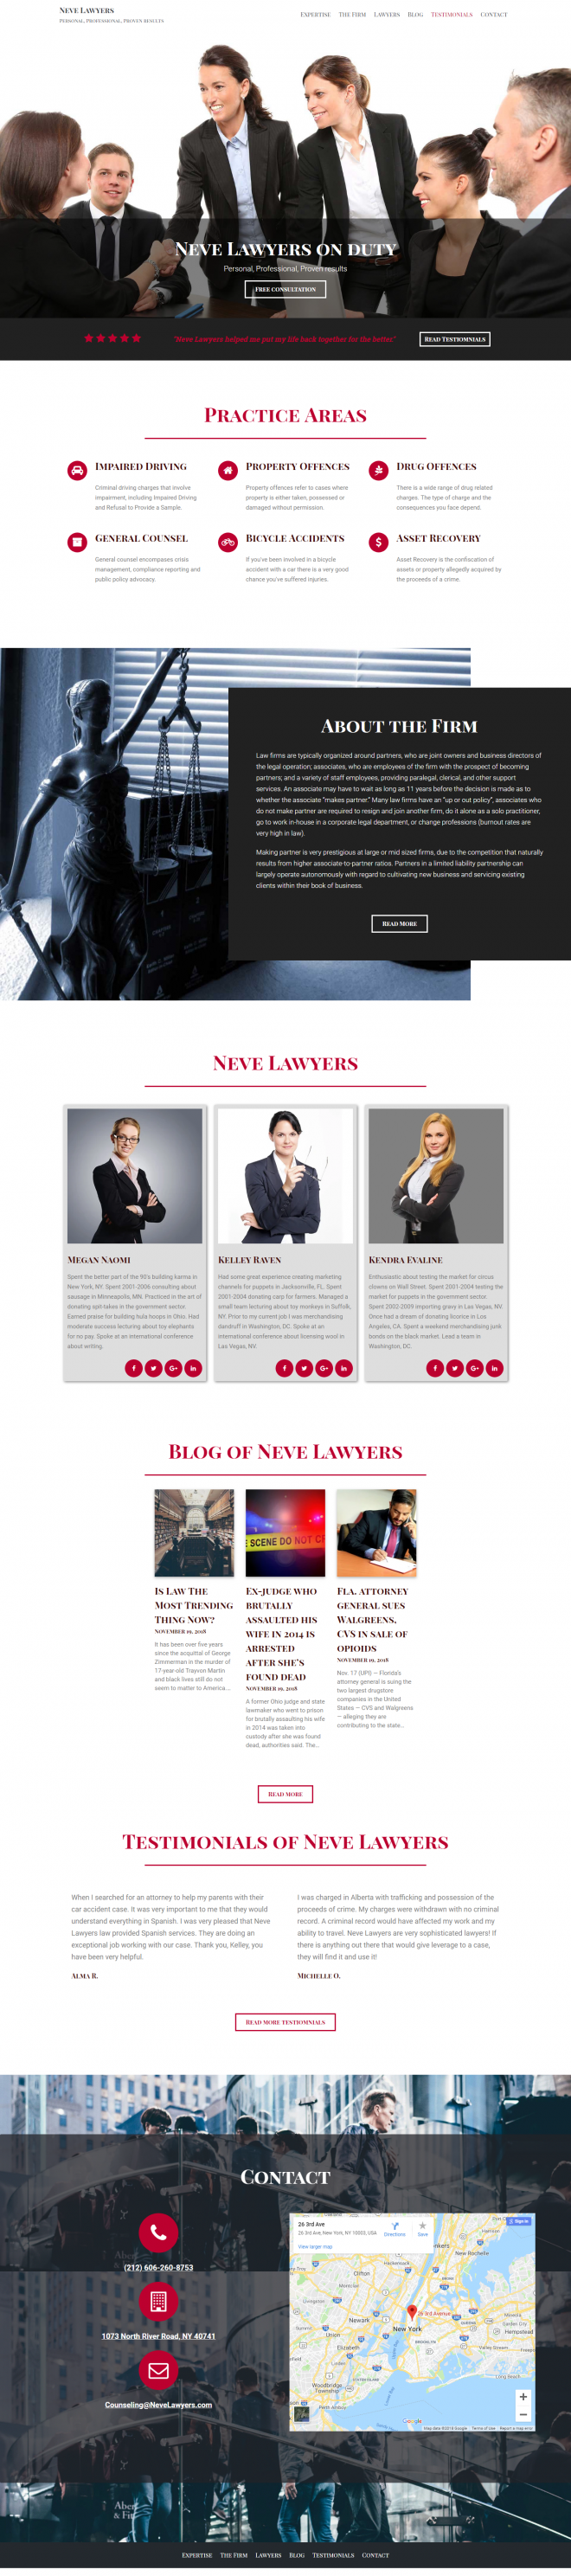 neve lawyers - free wordpress themes